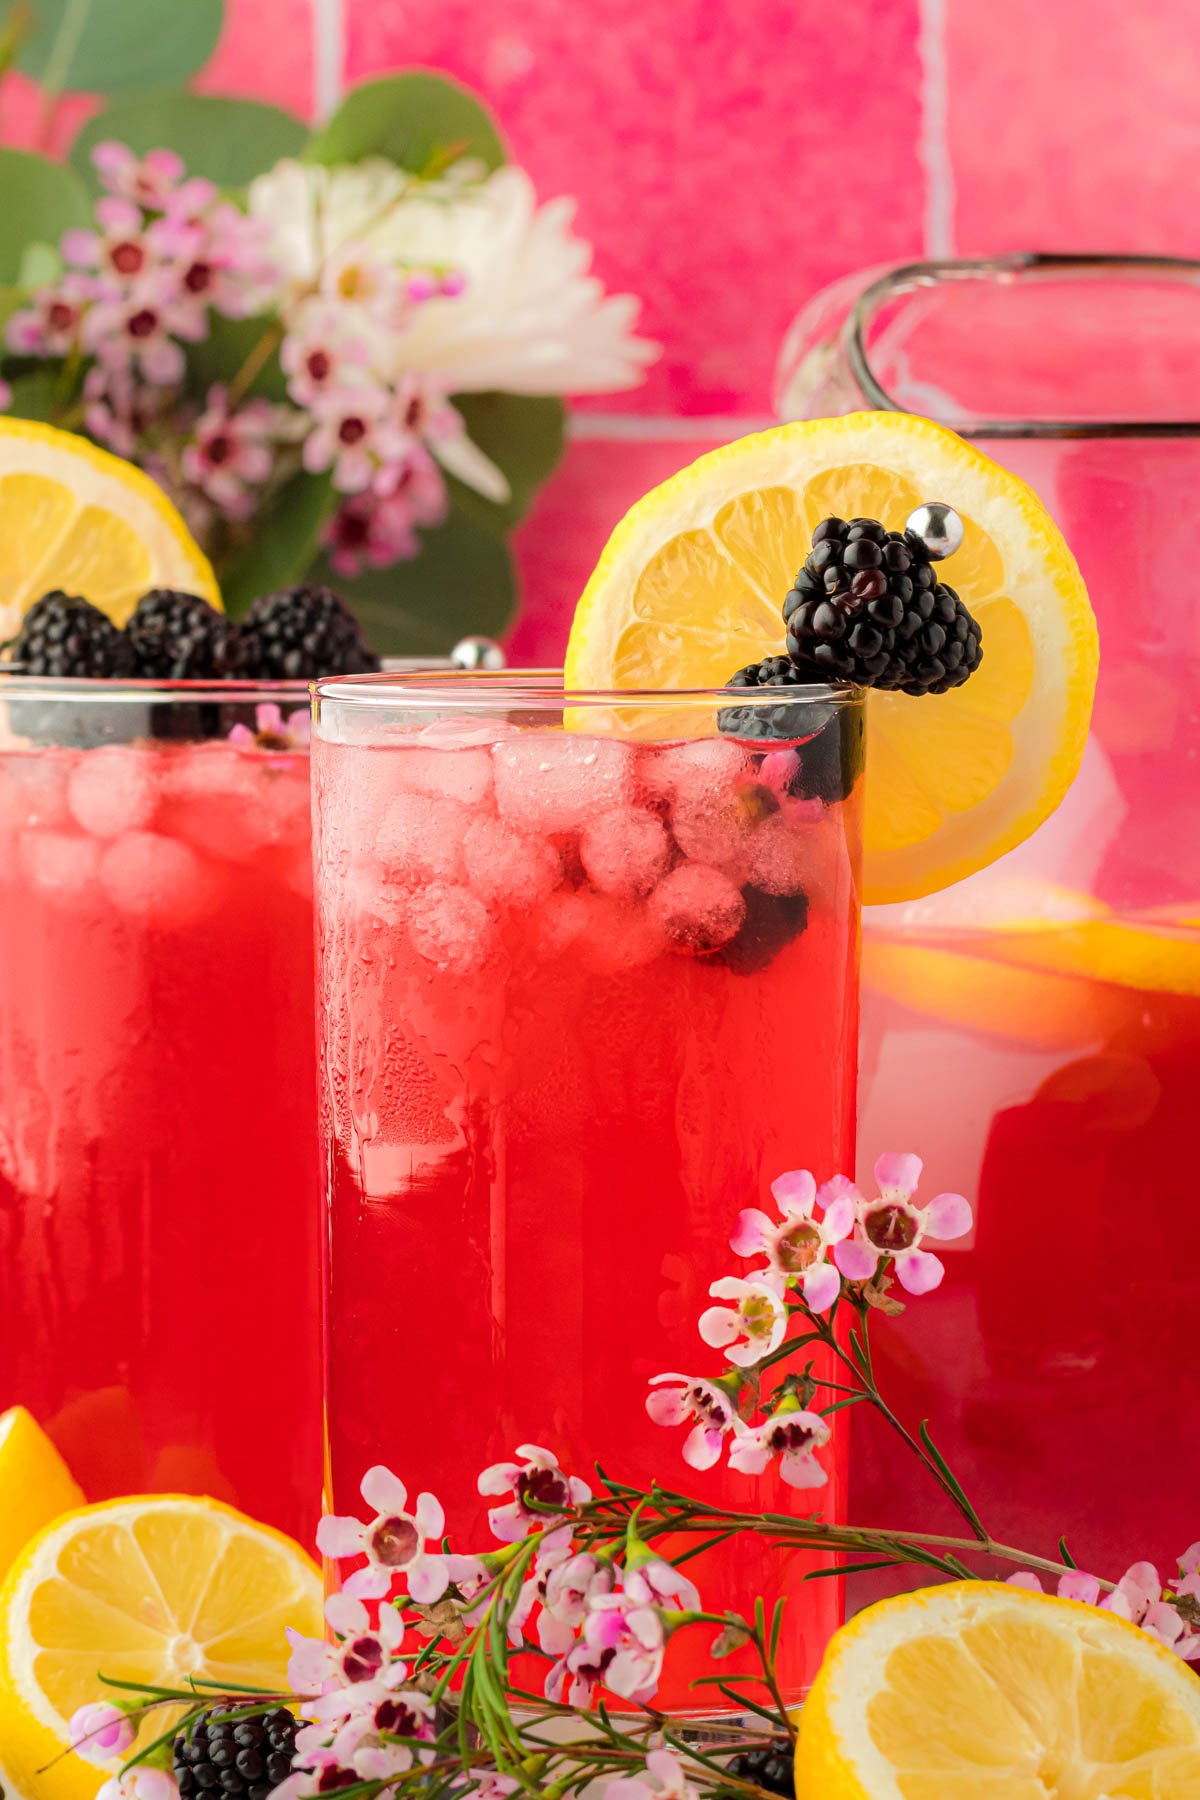 Glasses of blackberry lemonade on a table.